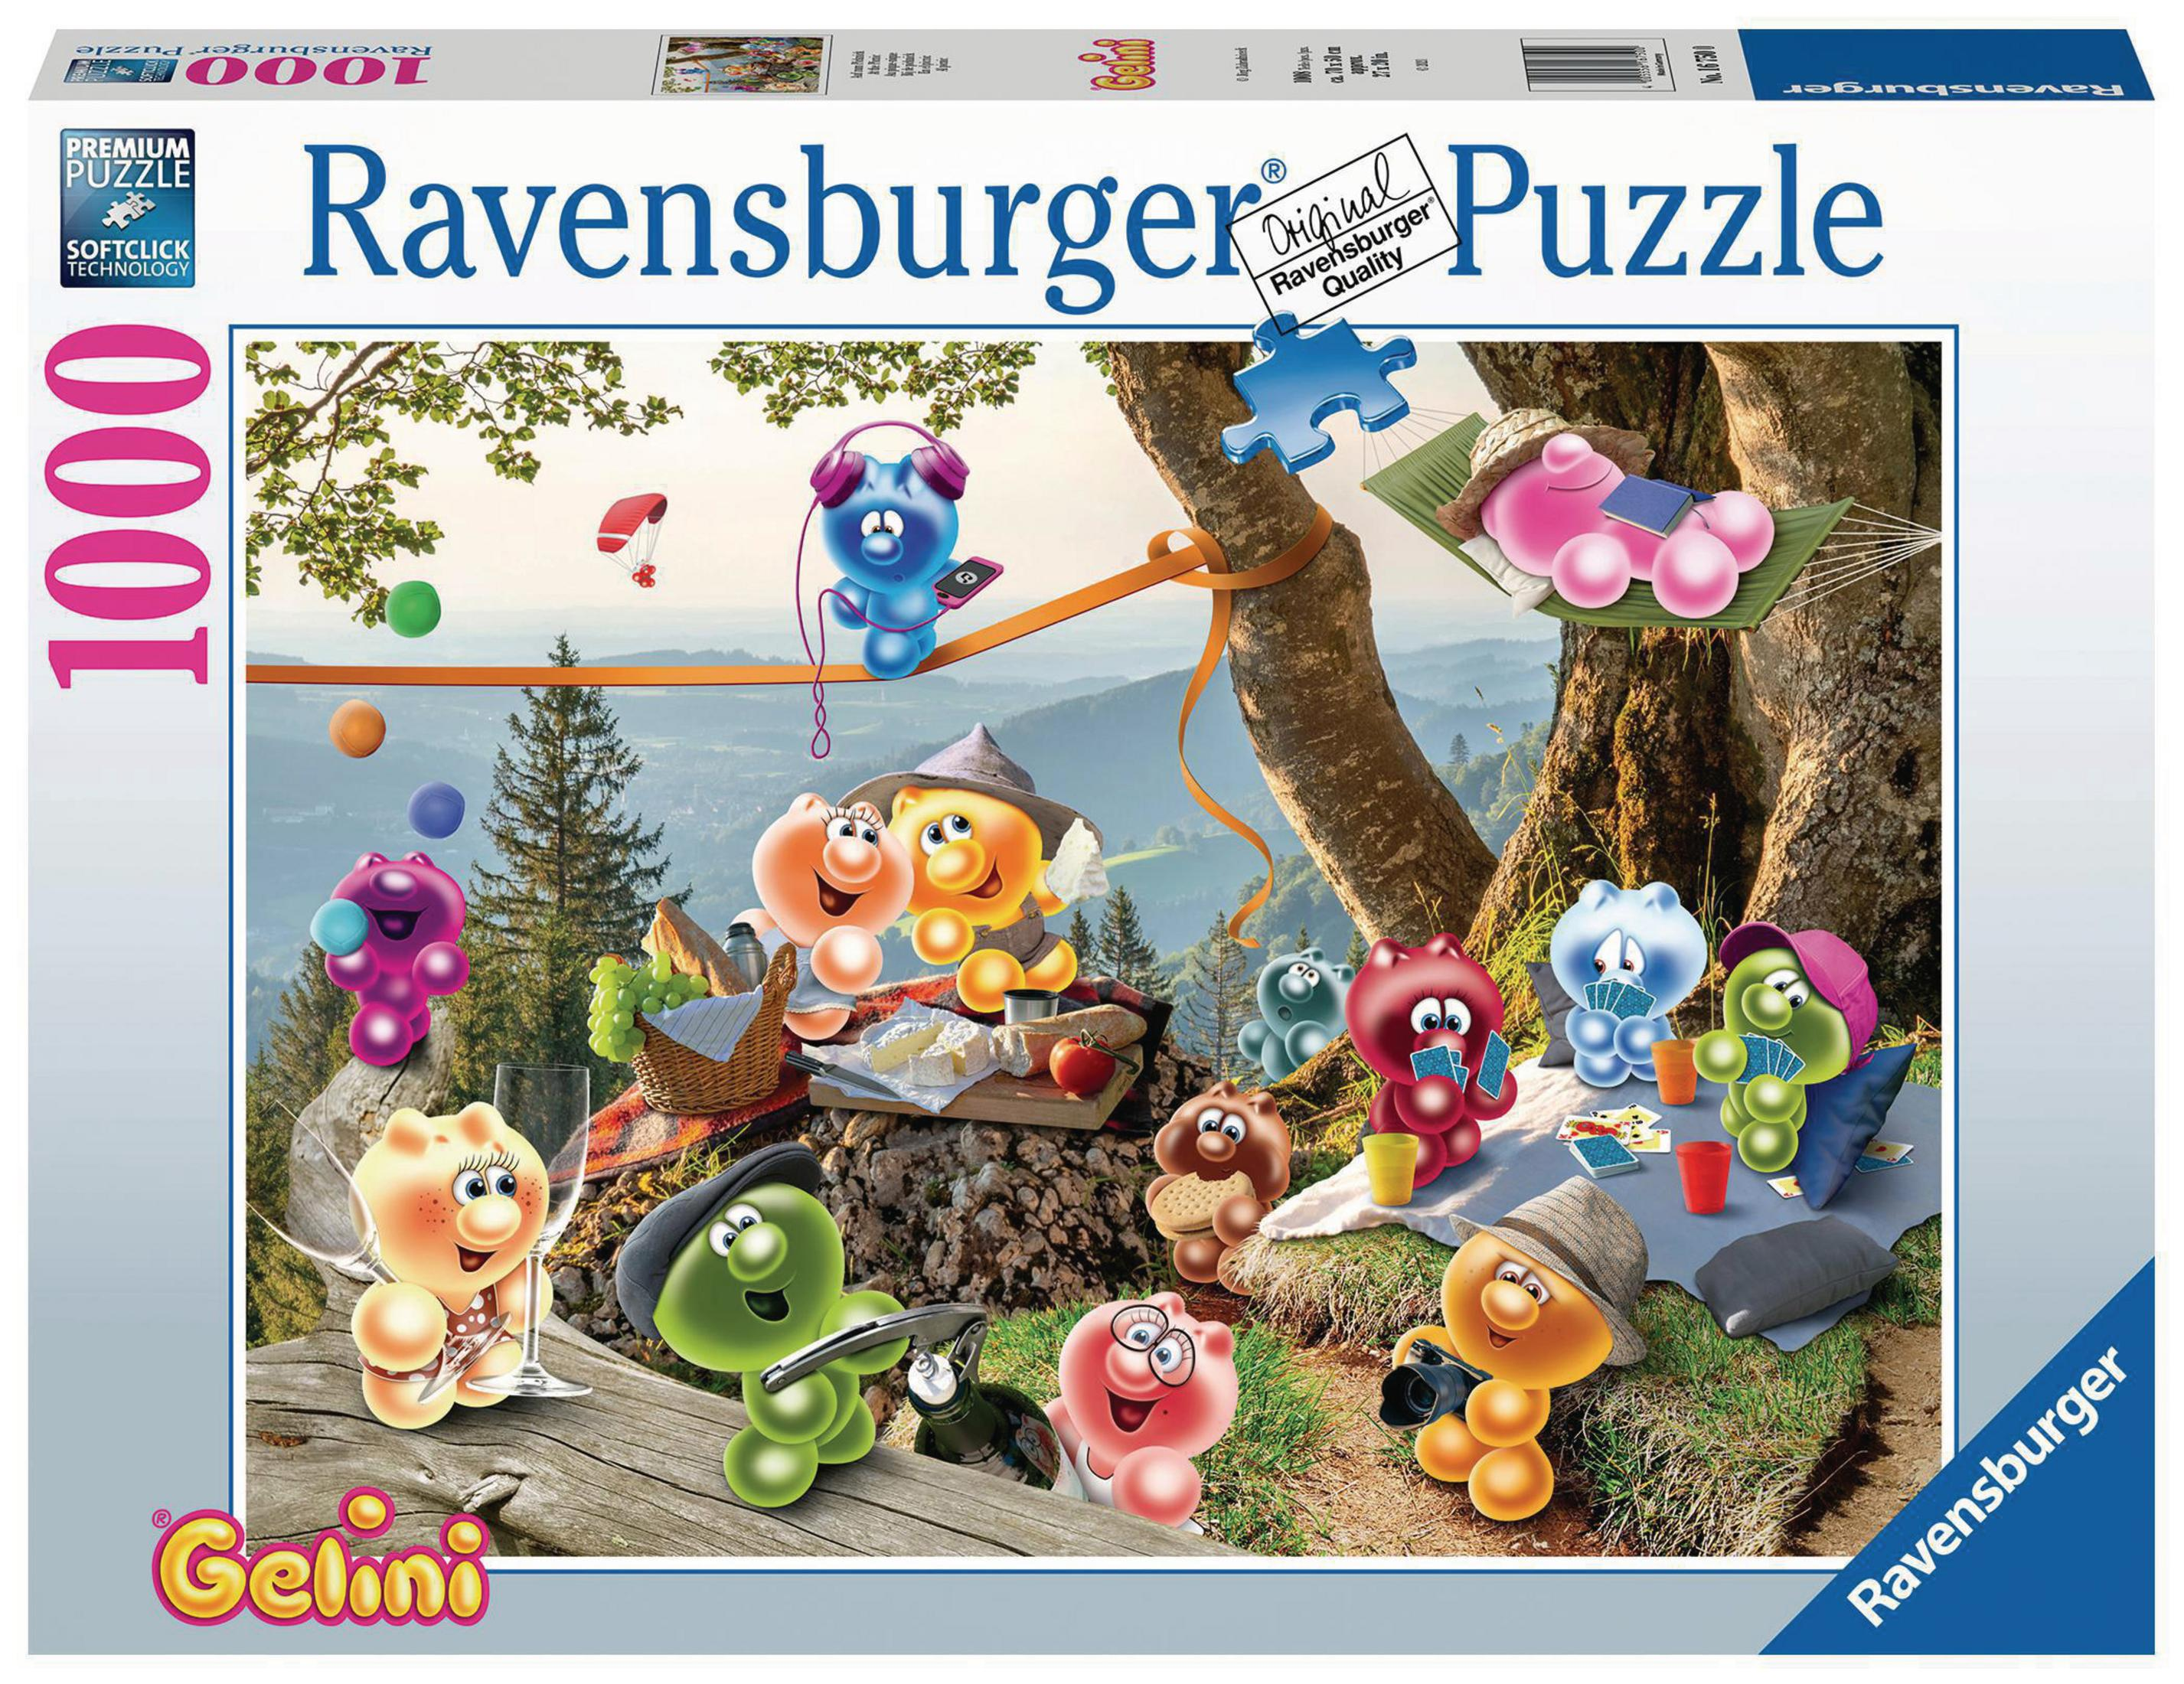 16750 RAVENSBURGER PICKNICK Puzzle ZUM GELINI-AUF